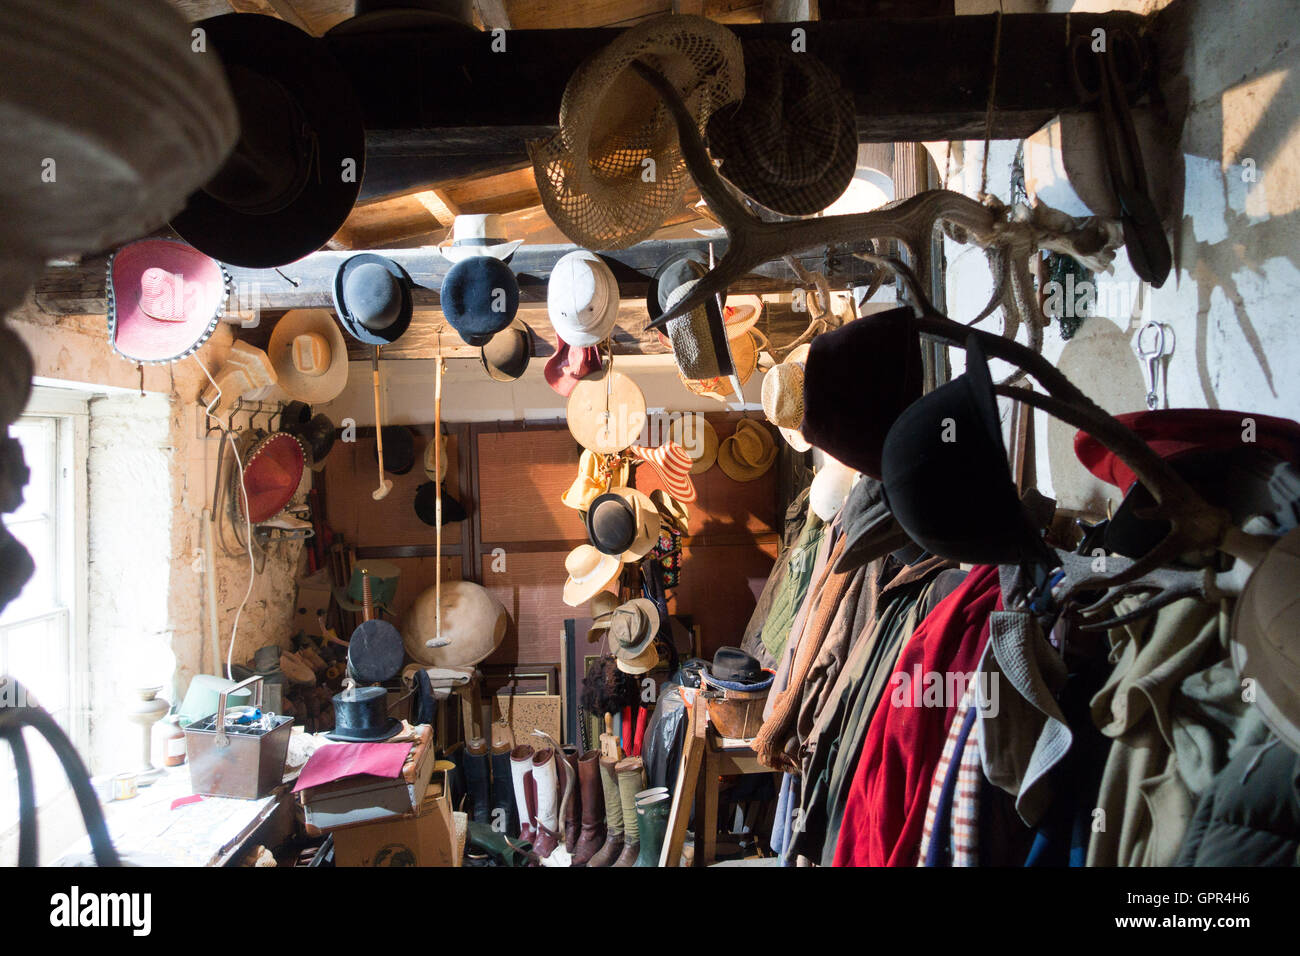 Sombreros, abrigos, botas del armario, trastero Foto de stock